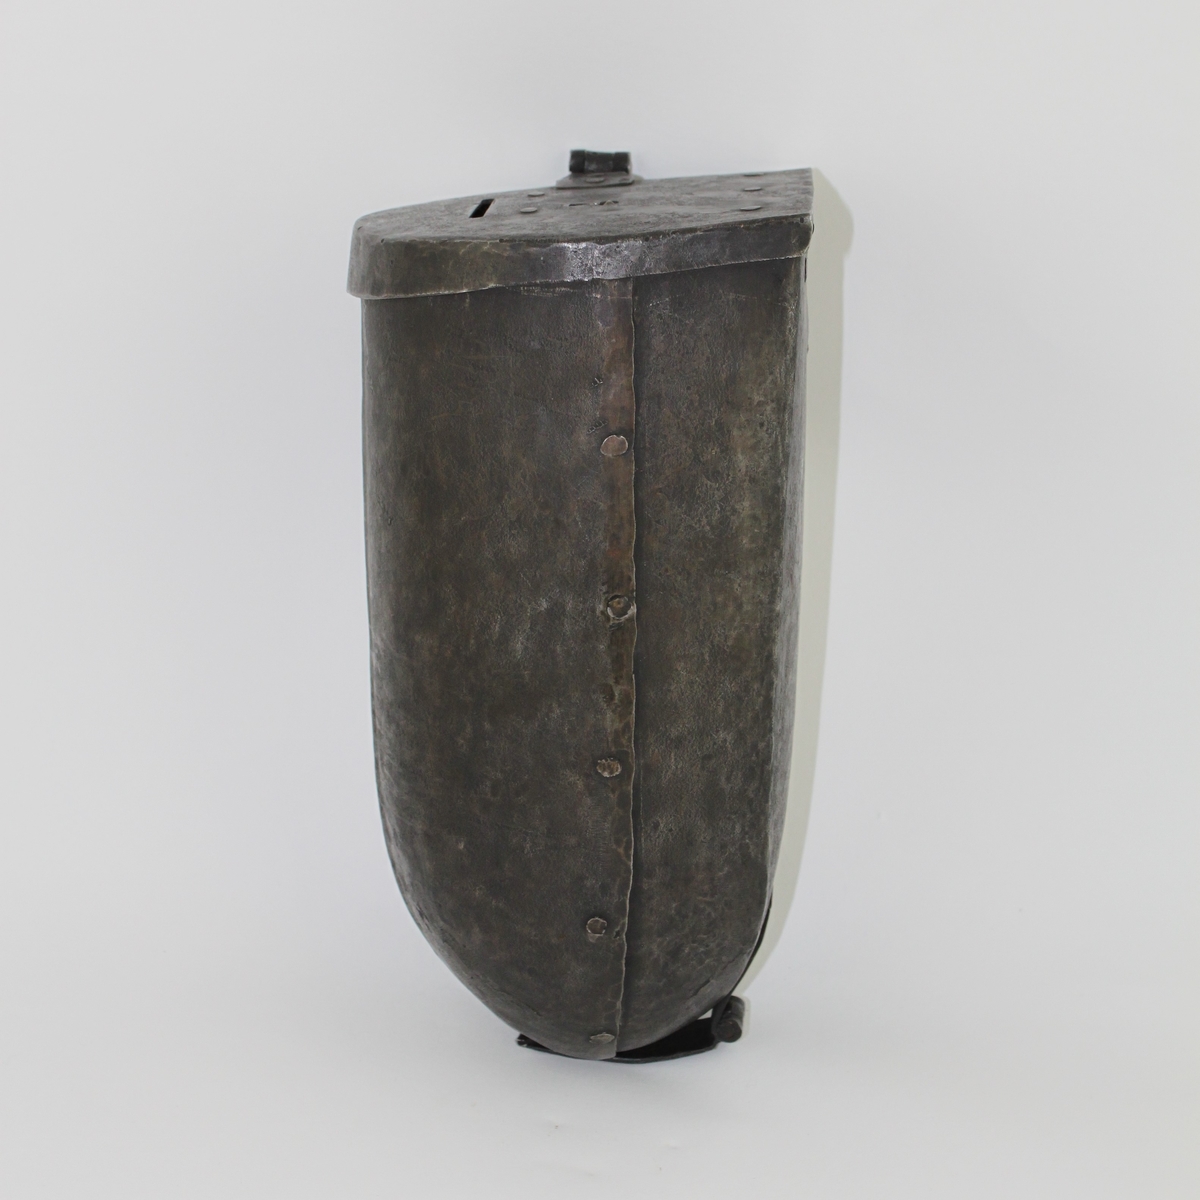 Brevbehållare eller kassaskrin av järnplåt med formen av en halvcylinder.
Lås i lock på gångjärn på ovansidan.